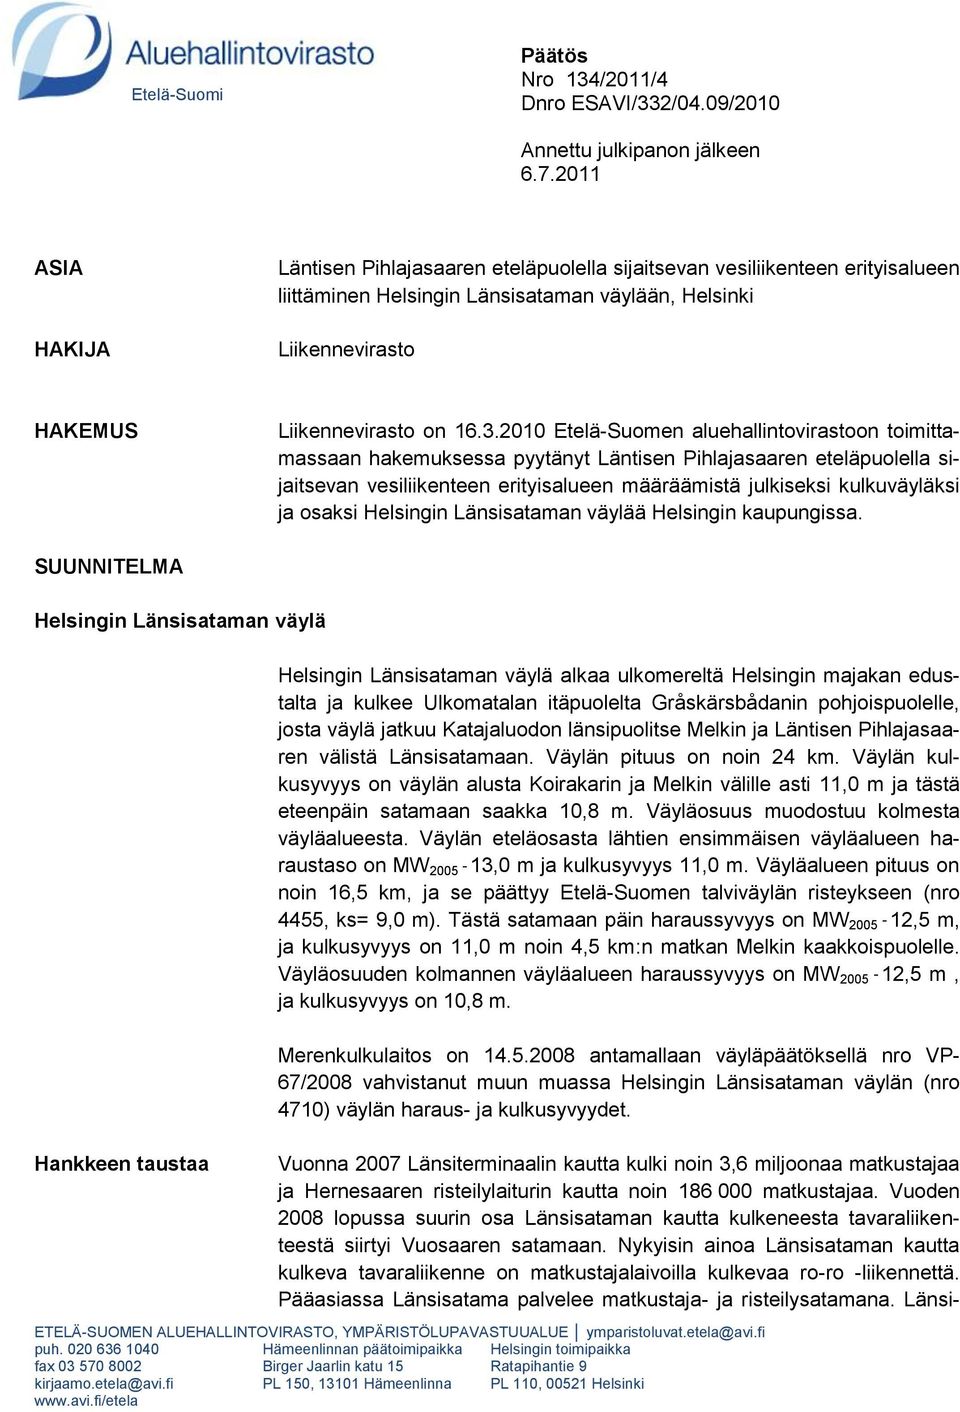 2010 Etelä-Suomen aluehallintovirastoon toimittamassaan hakemuksessa pyytänyt Läntisen Pihlajasaaren eteläpuolella sijaitsevan vesiliikenteen erityisalueen määräämistä julkiseksi kulkuväyläksi ja